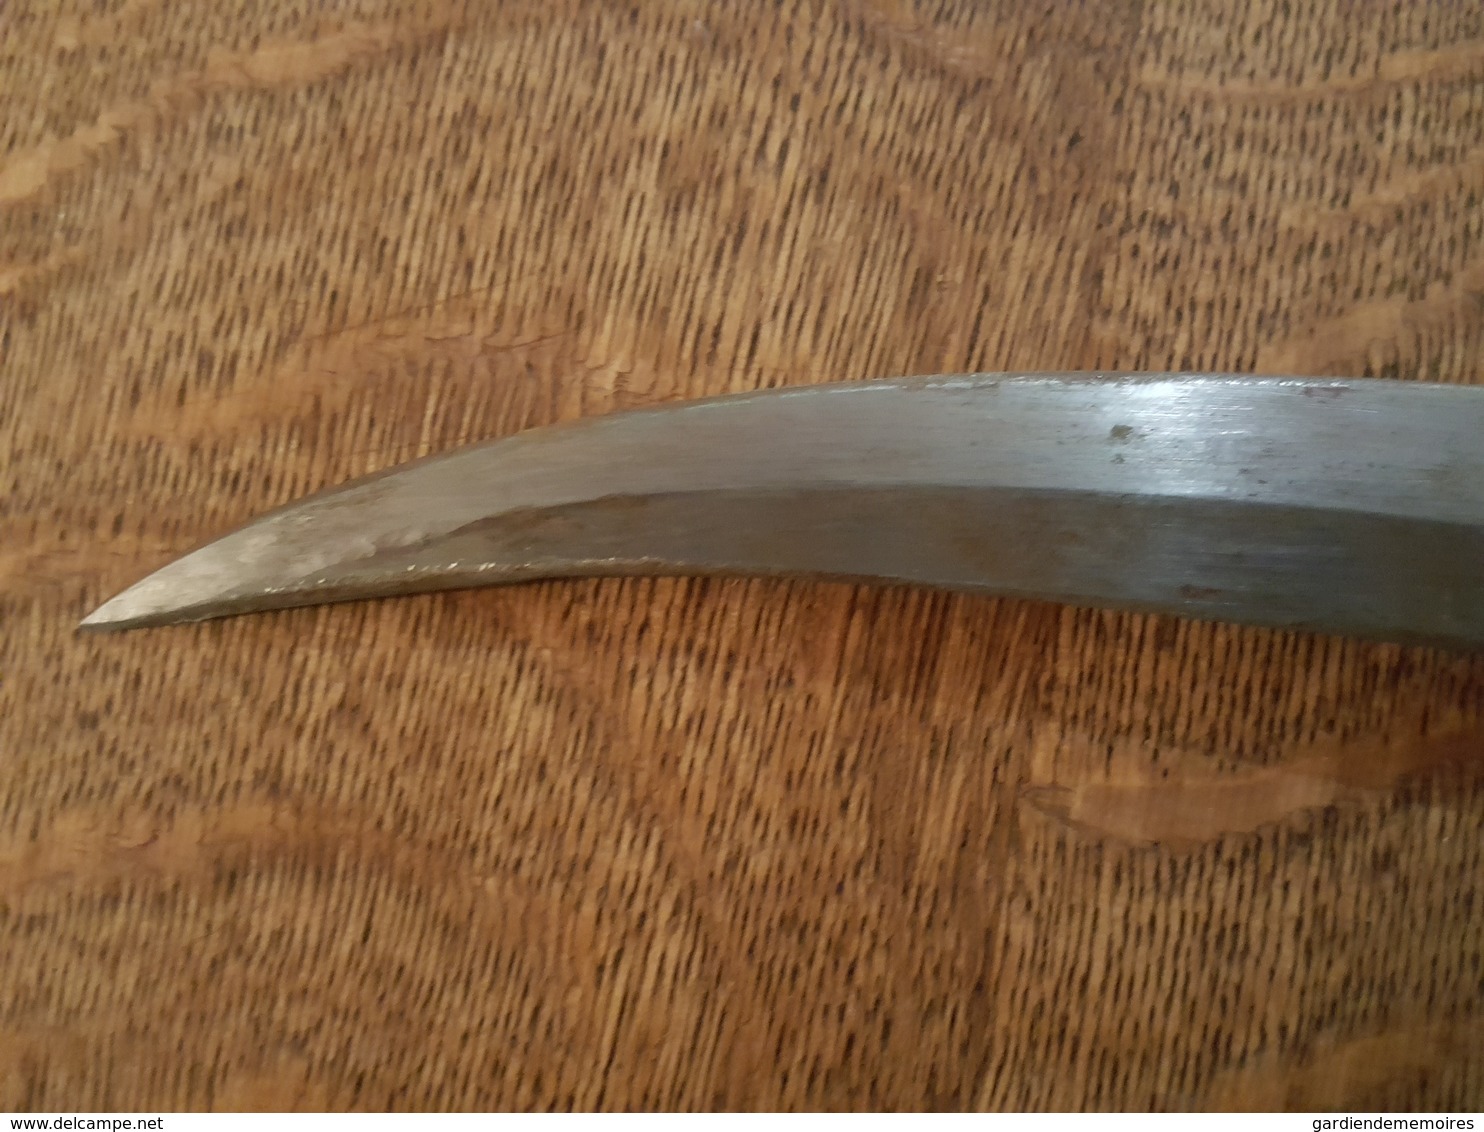 Ancien Couteau Poignard à Double Tranchant Arabe - Fourreau ciselé - Marque Etoile sur la lame - Manche en os?